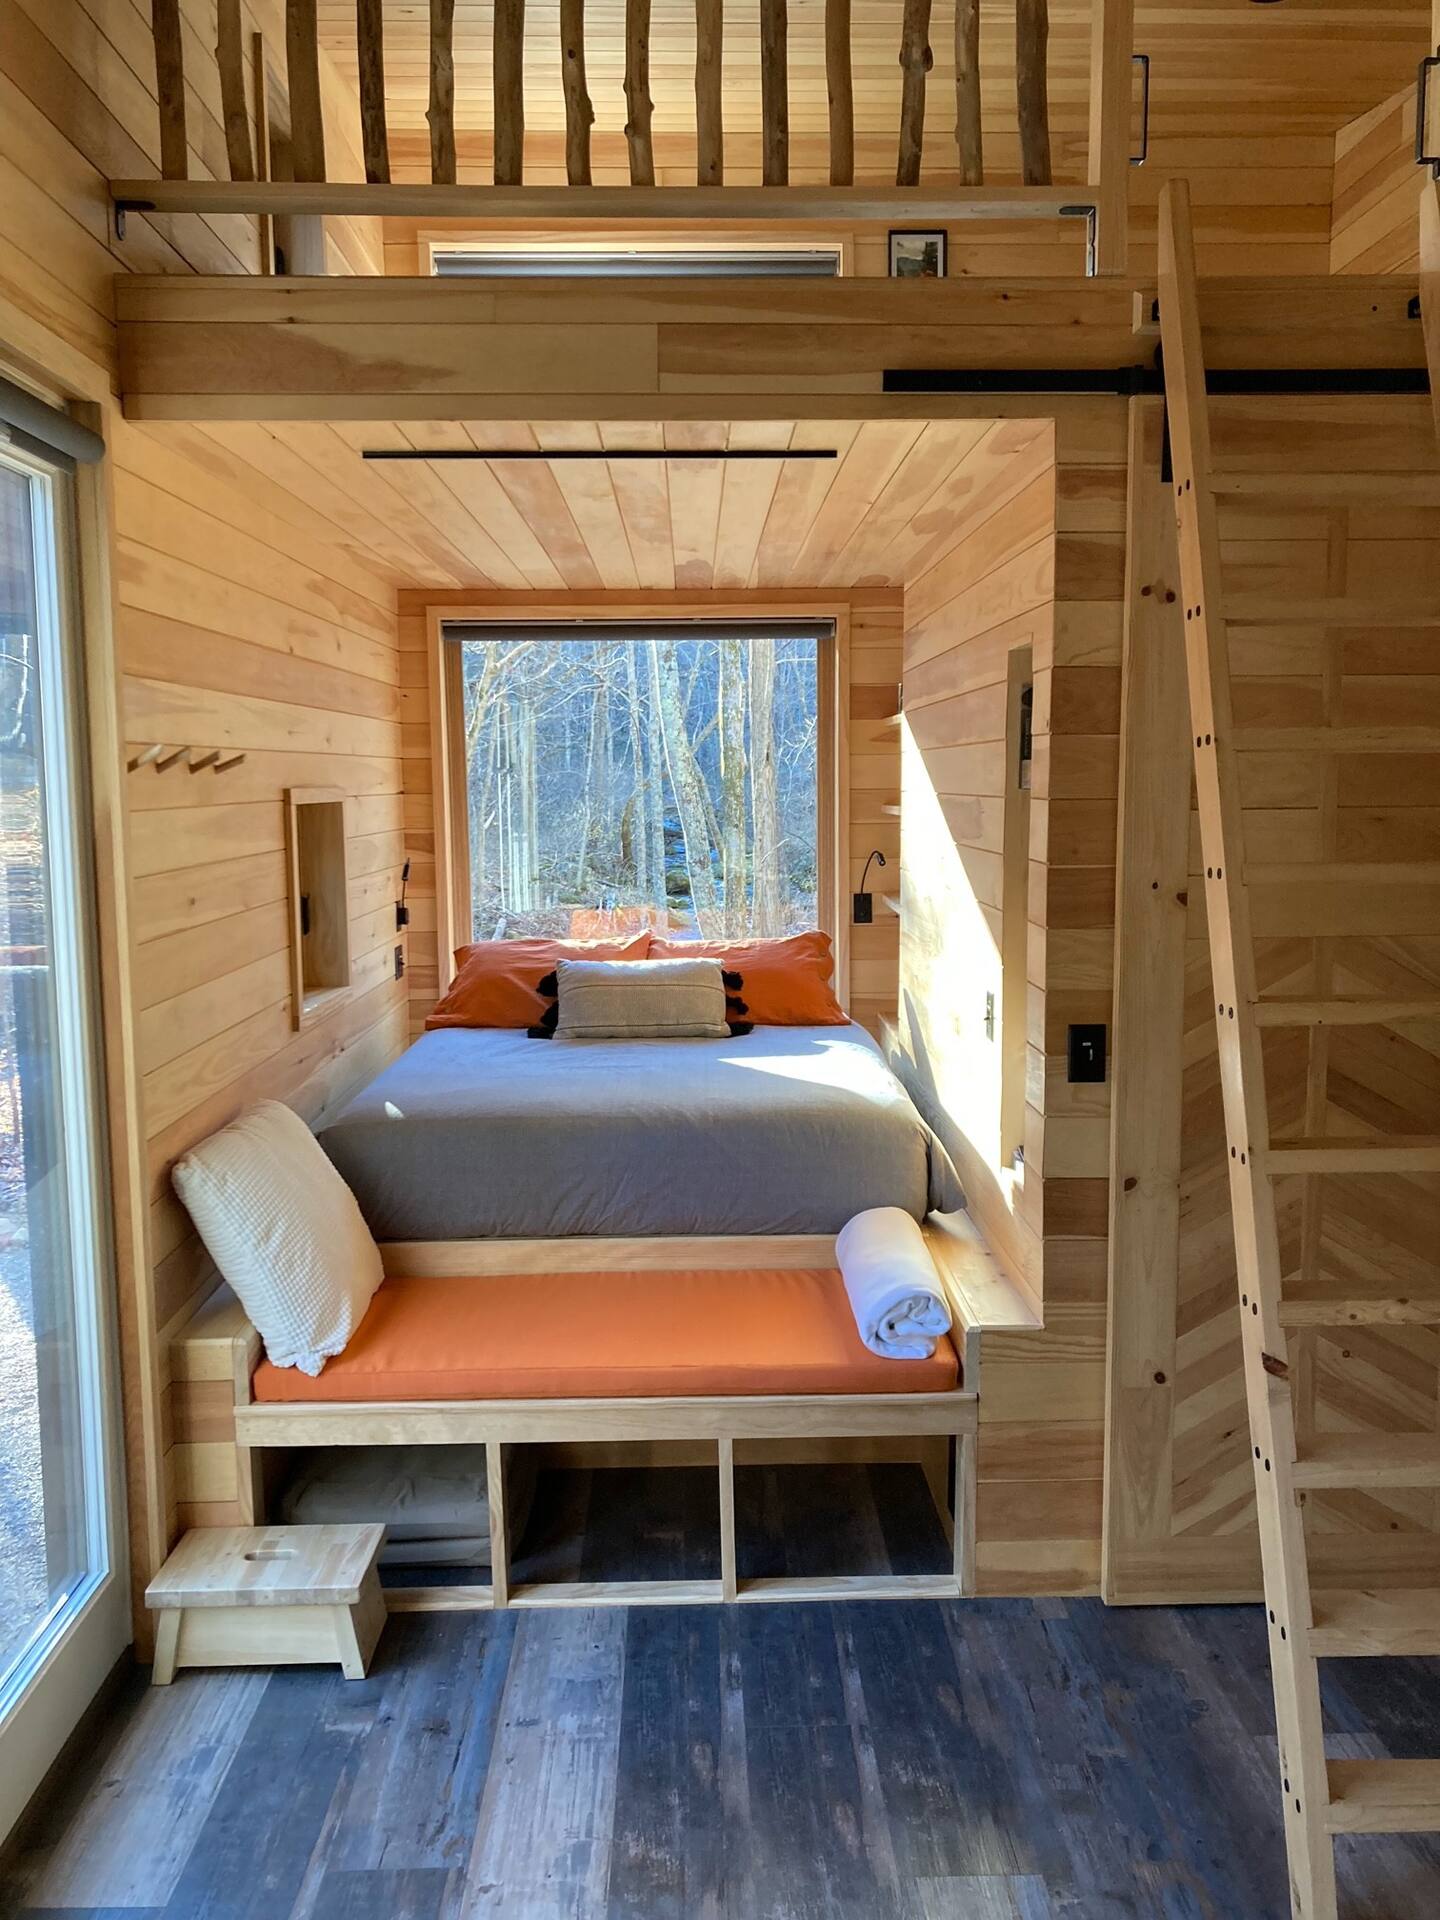 Inside a wooden cabin